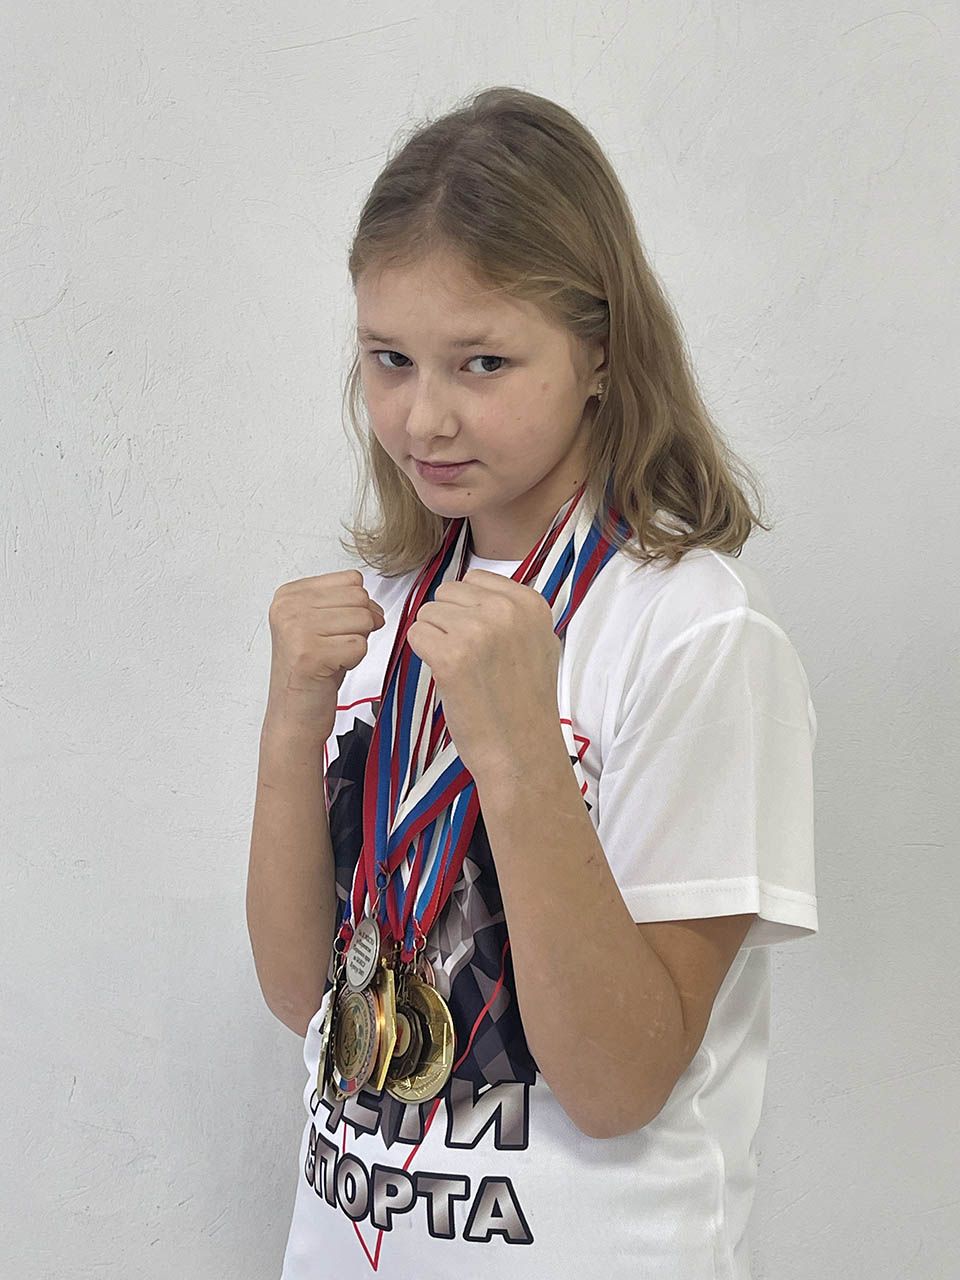 Полина Шляпникова амбассадор спорт начинается с детей Пермь